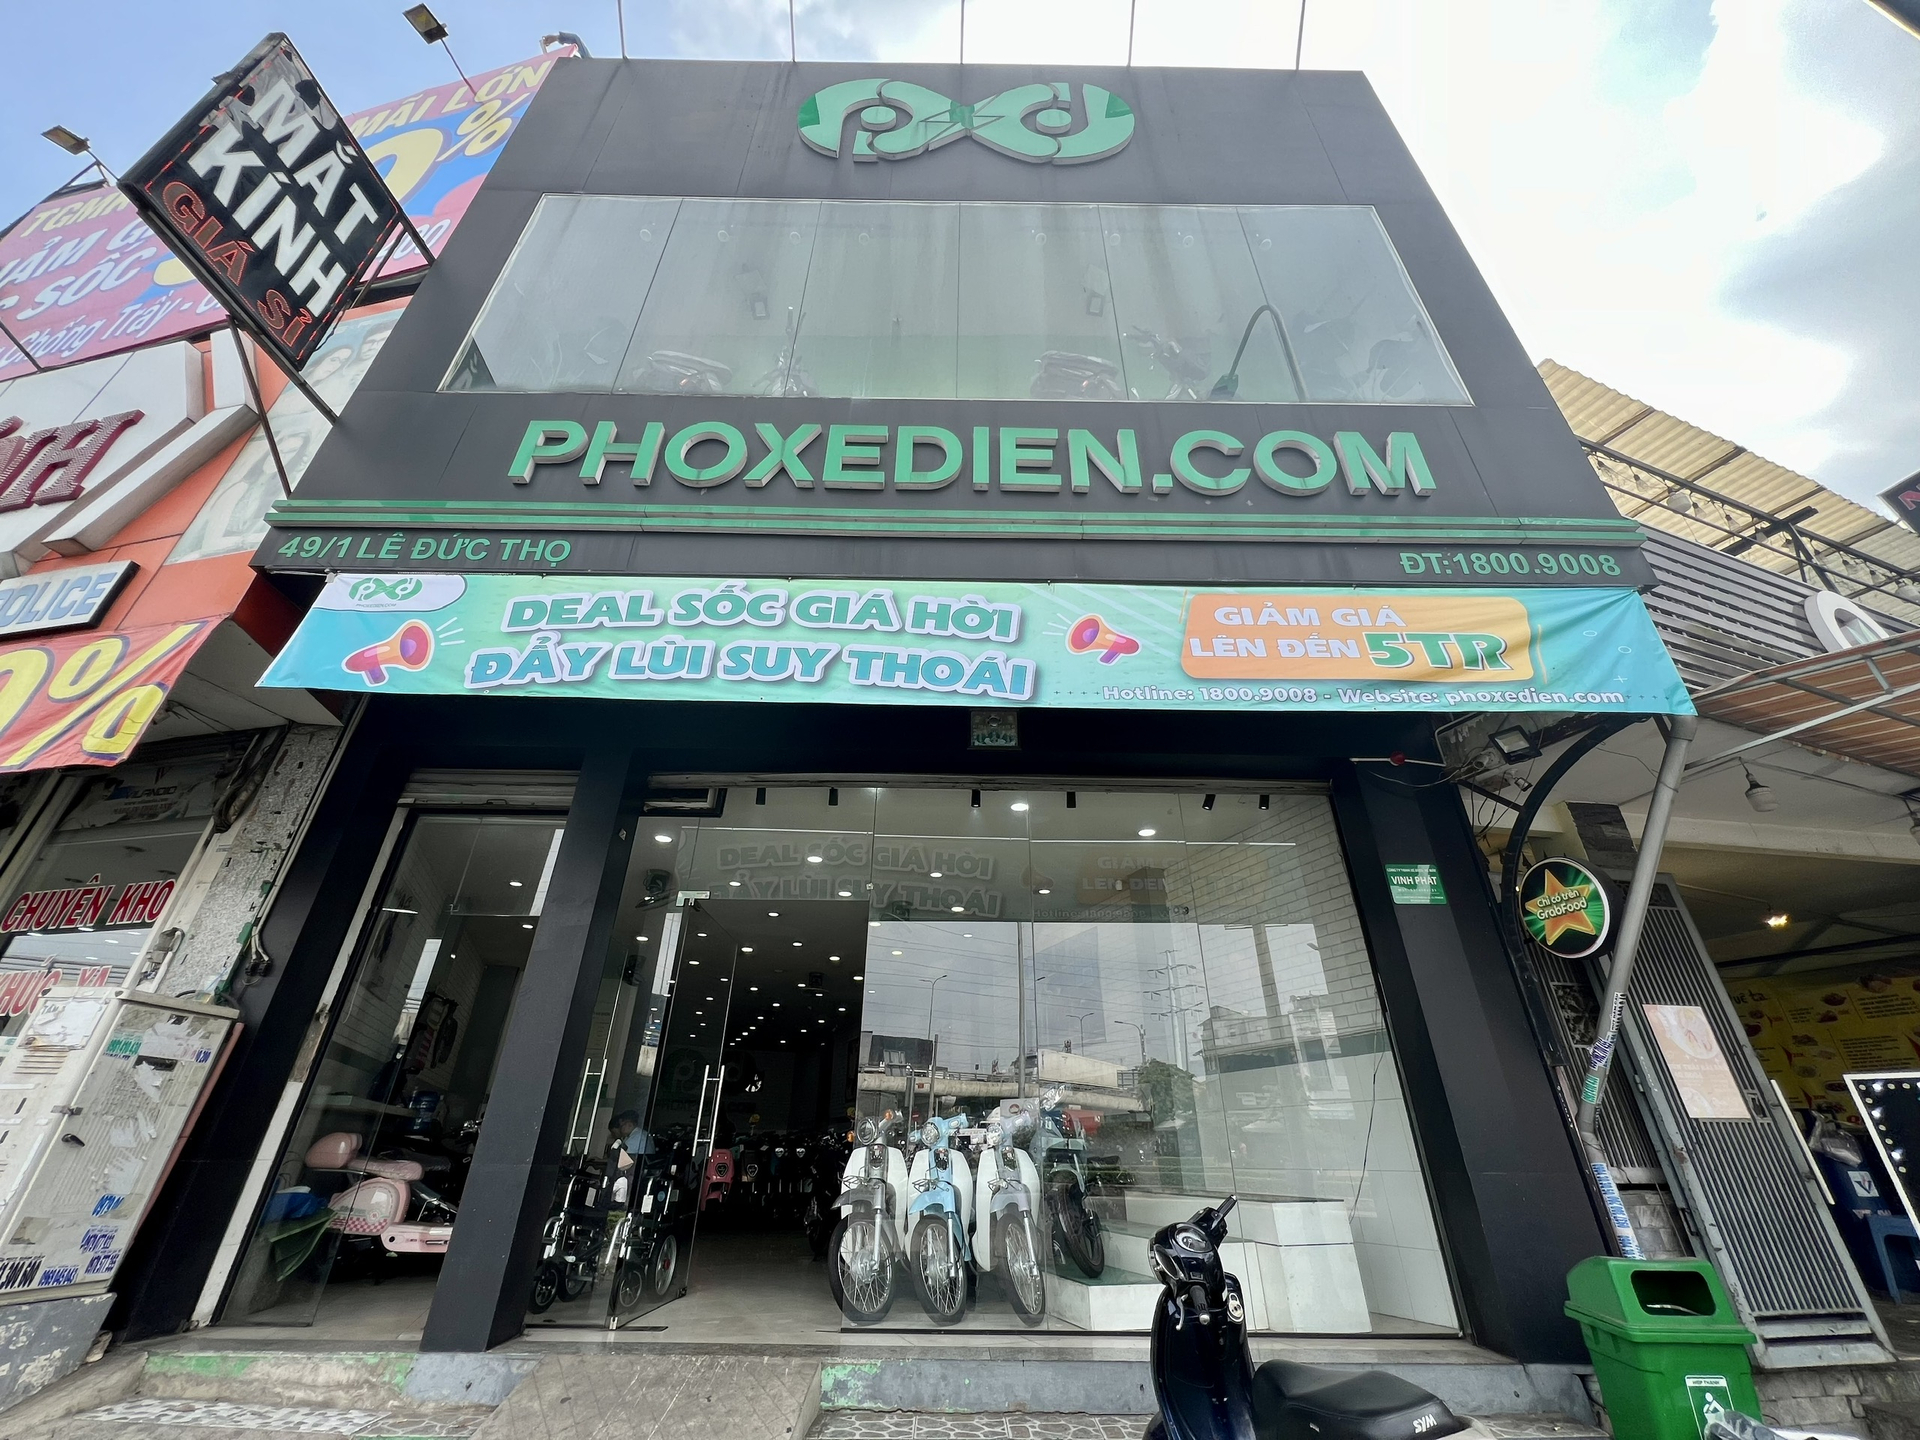 Địa chỉ phoxedien.com tại số 49/1 Lê Đức Thọ, phường Thới An, đây cũng là địa chỉ Công ty TNHH xe điện xe máy Vinh Phát